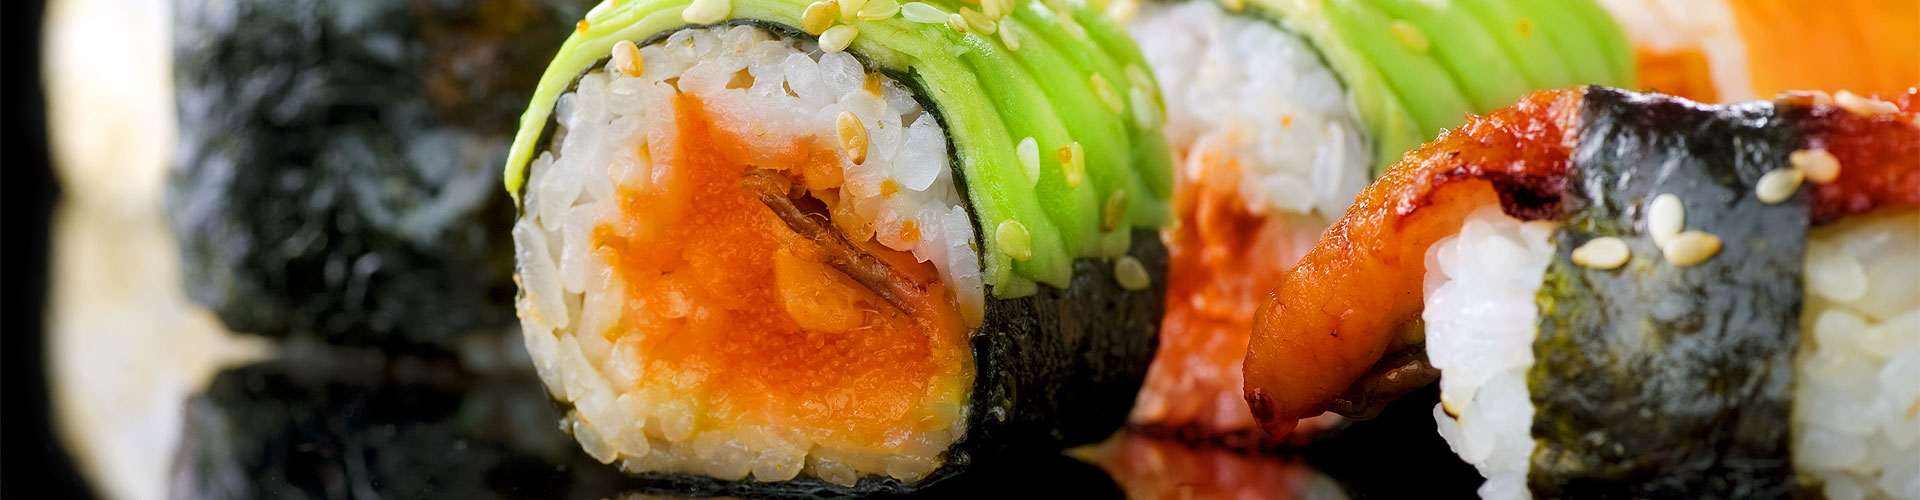 ¿Dónde comer sushi en Mairena?